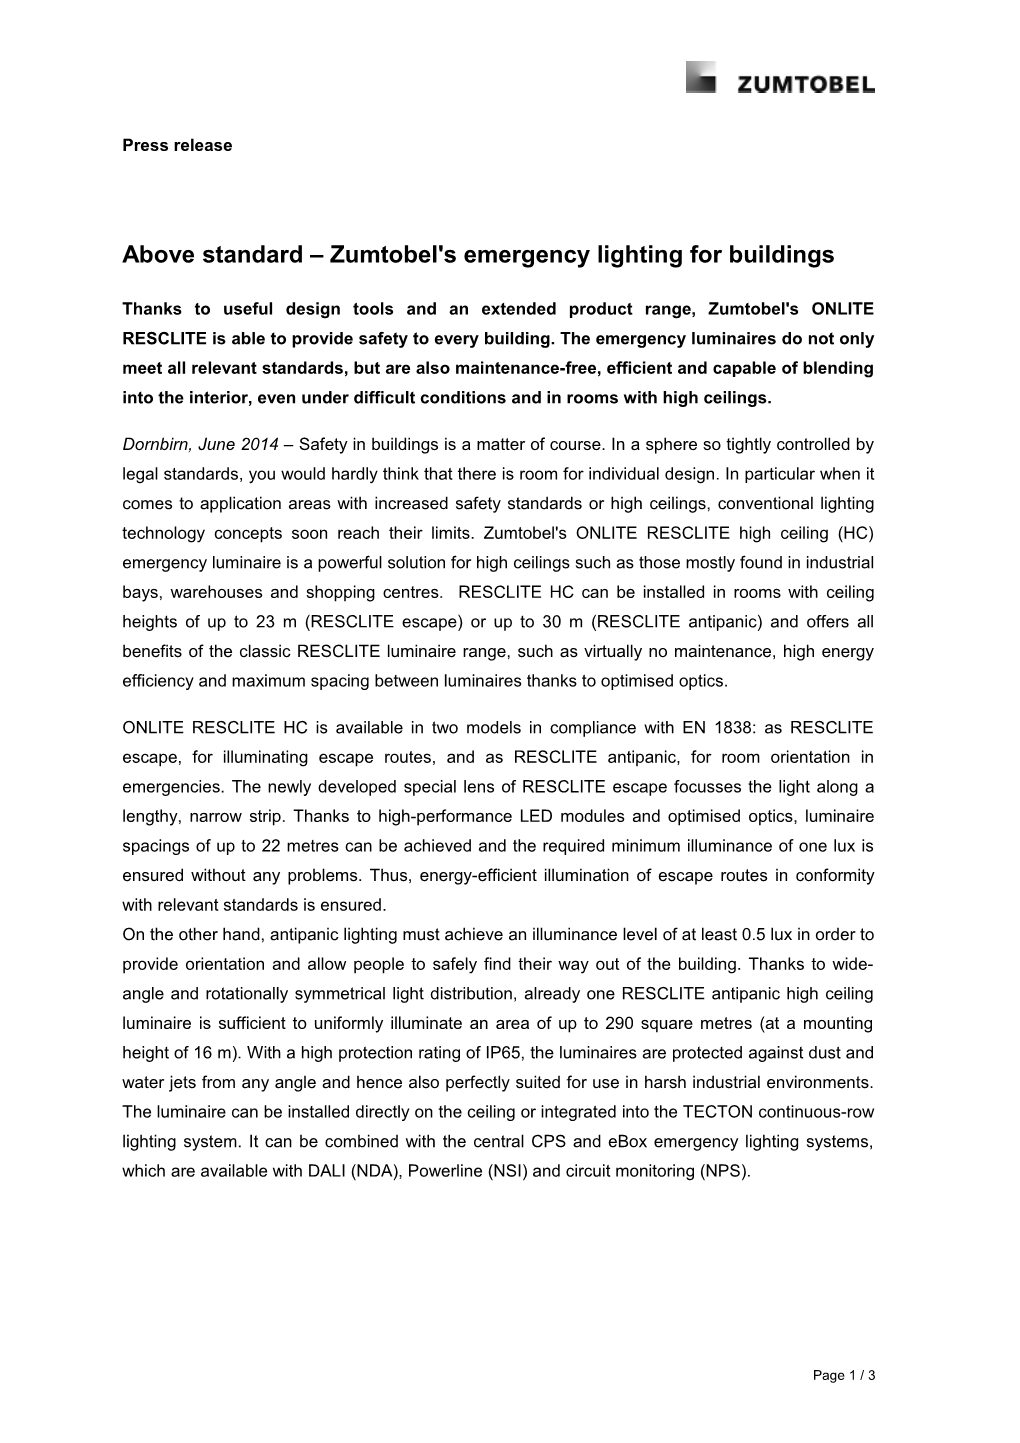 Above Standard Zumtobel's Emergency Lighting for Buildings